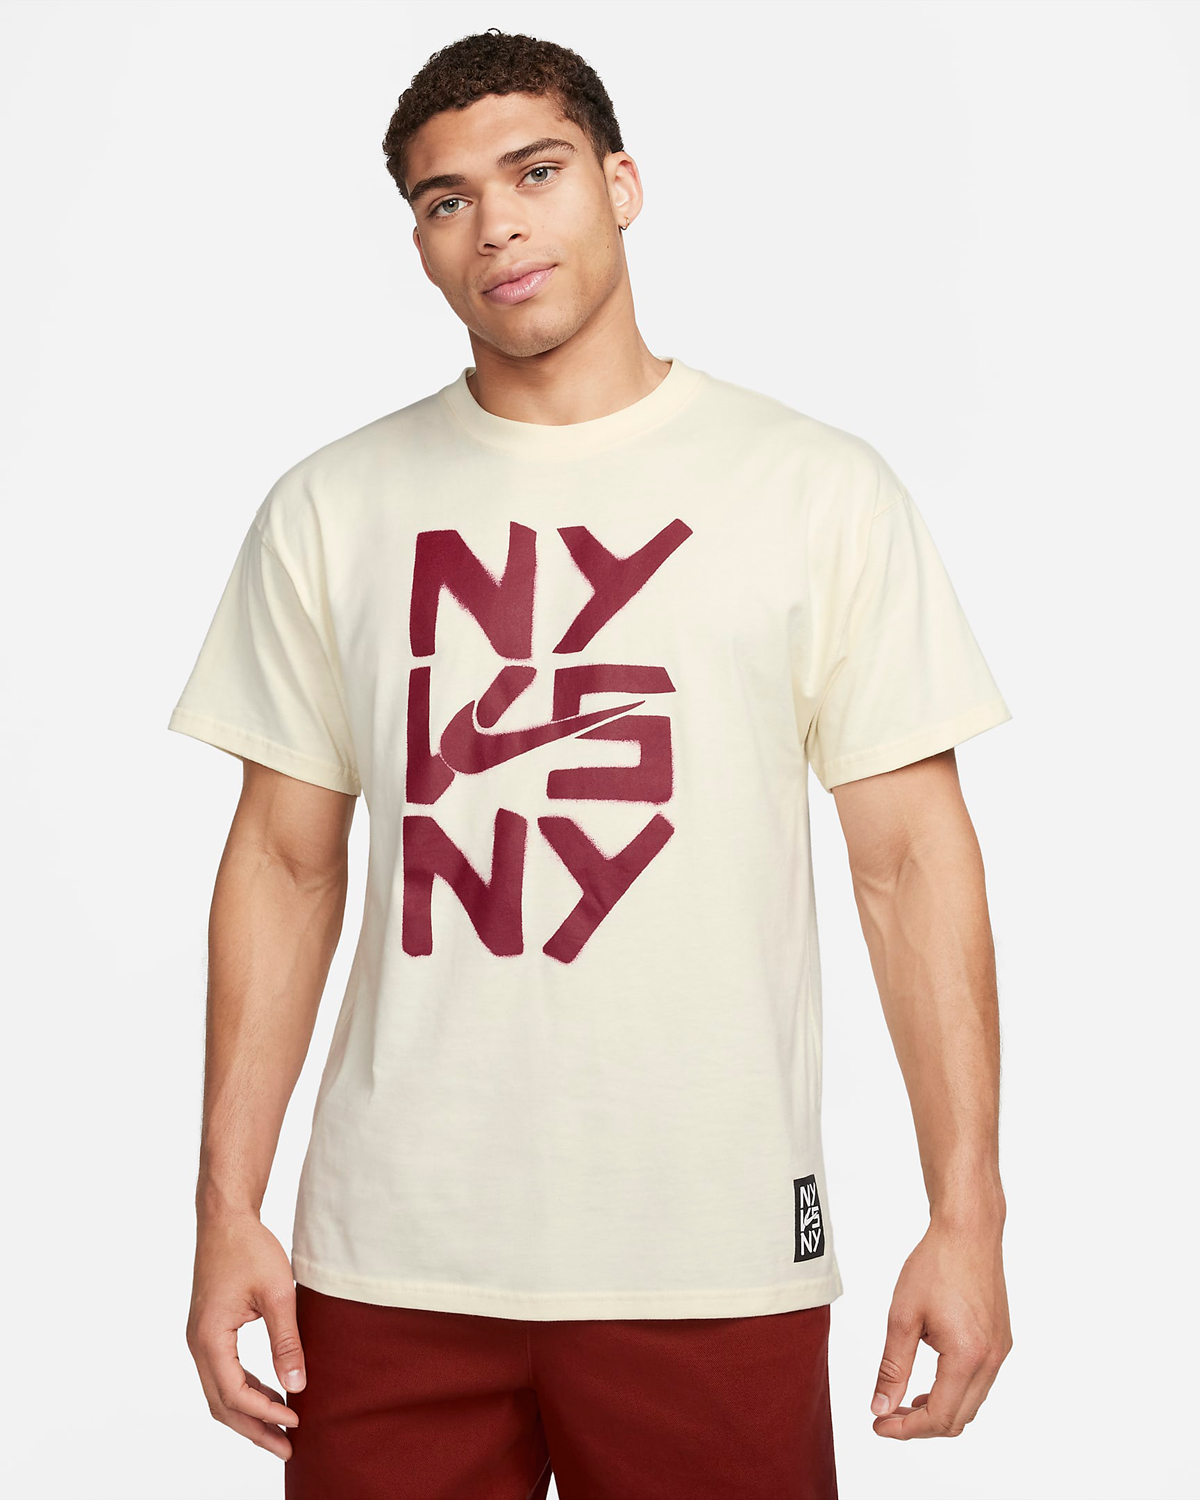 Nike-Sportswear-NY-vs-NY-T-Shirt-Coconut-Milk-Night-Maroon-1